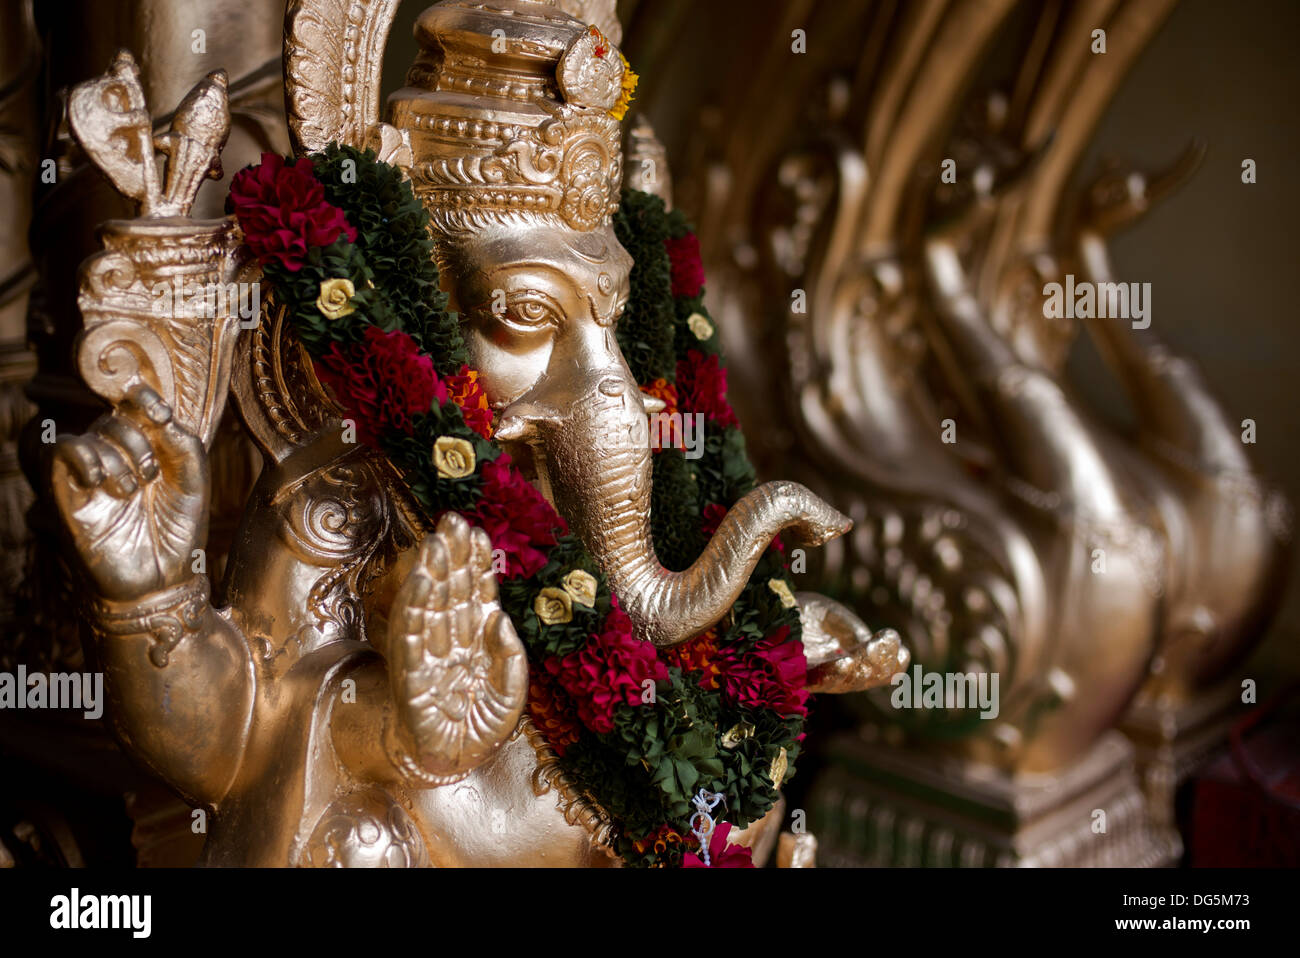 Gold Painted Ganesha statue. India Stock Photo - Alamy